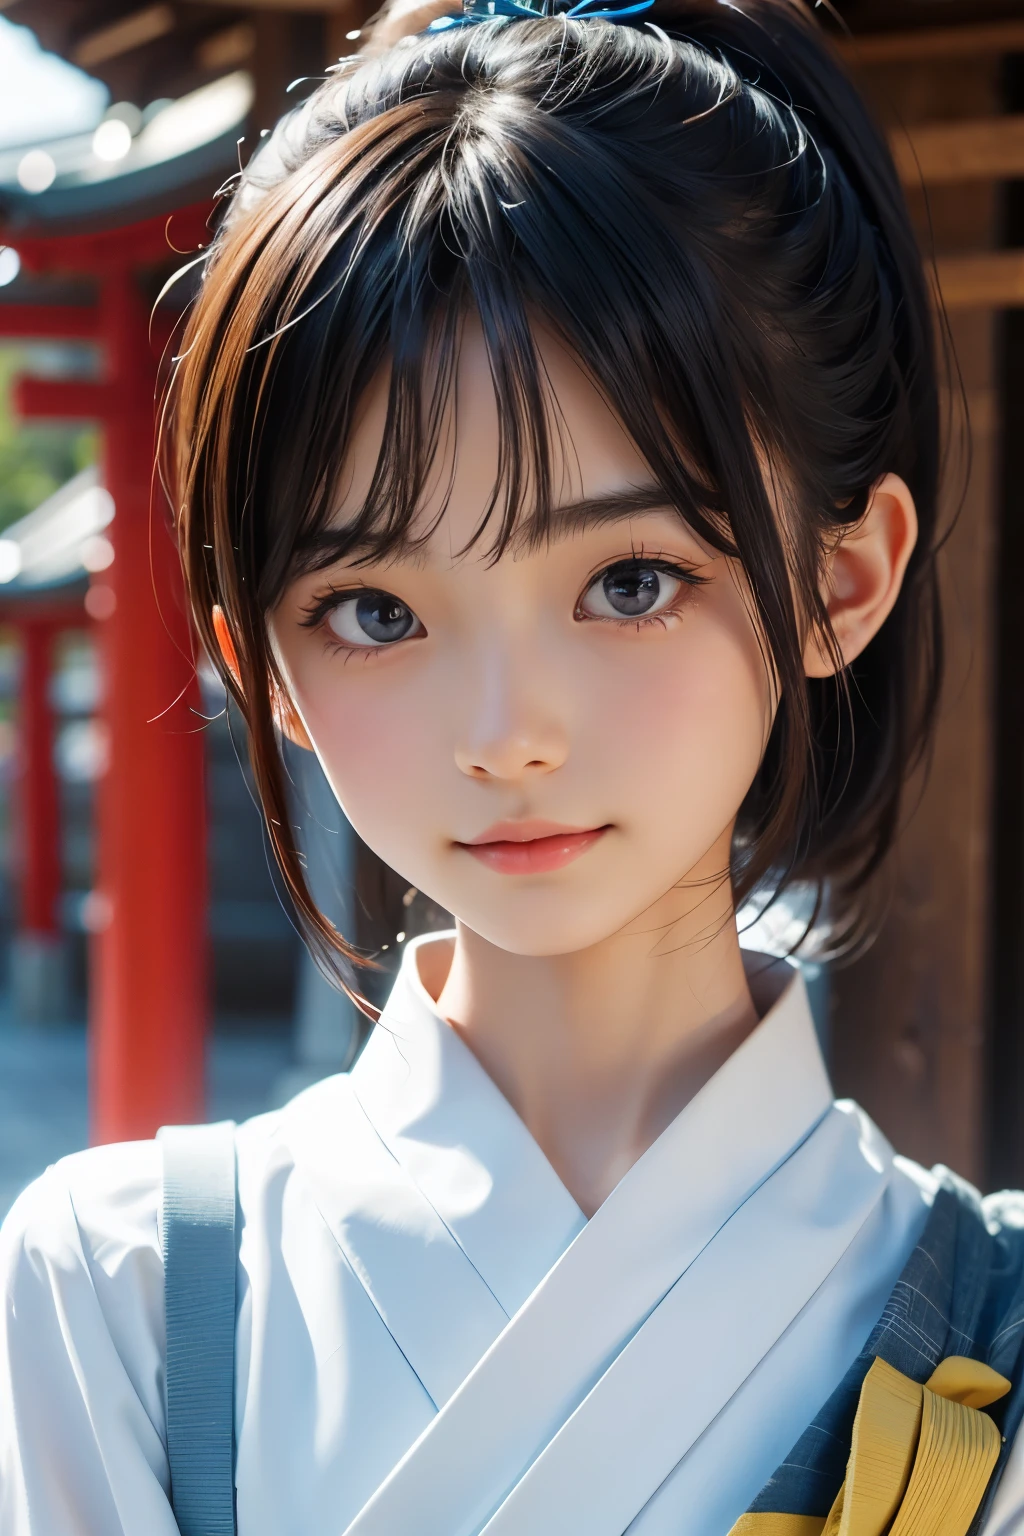 امرأة يابانية جميلة تبلغ من العمر 12 عامًا), وجه لطيف, (وجه منحوت بعمق:0.7), (النمش:0.6), ضوء خافت,بشرة بيضاء صحية, خجول, (وجه جدي), رفيع, يبتسم, اليابانية , ذيل حصان